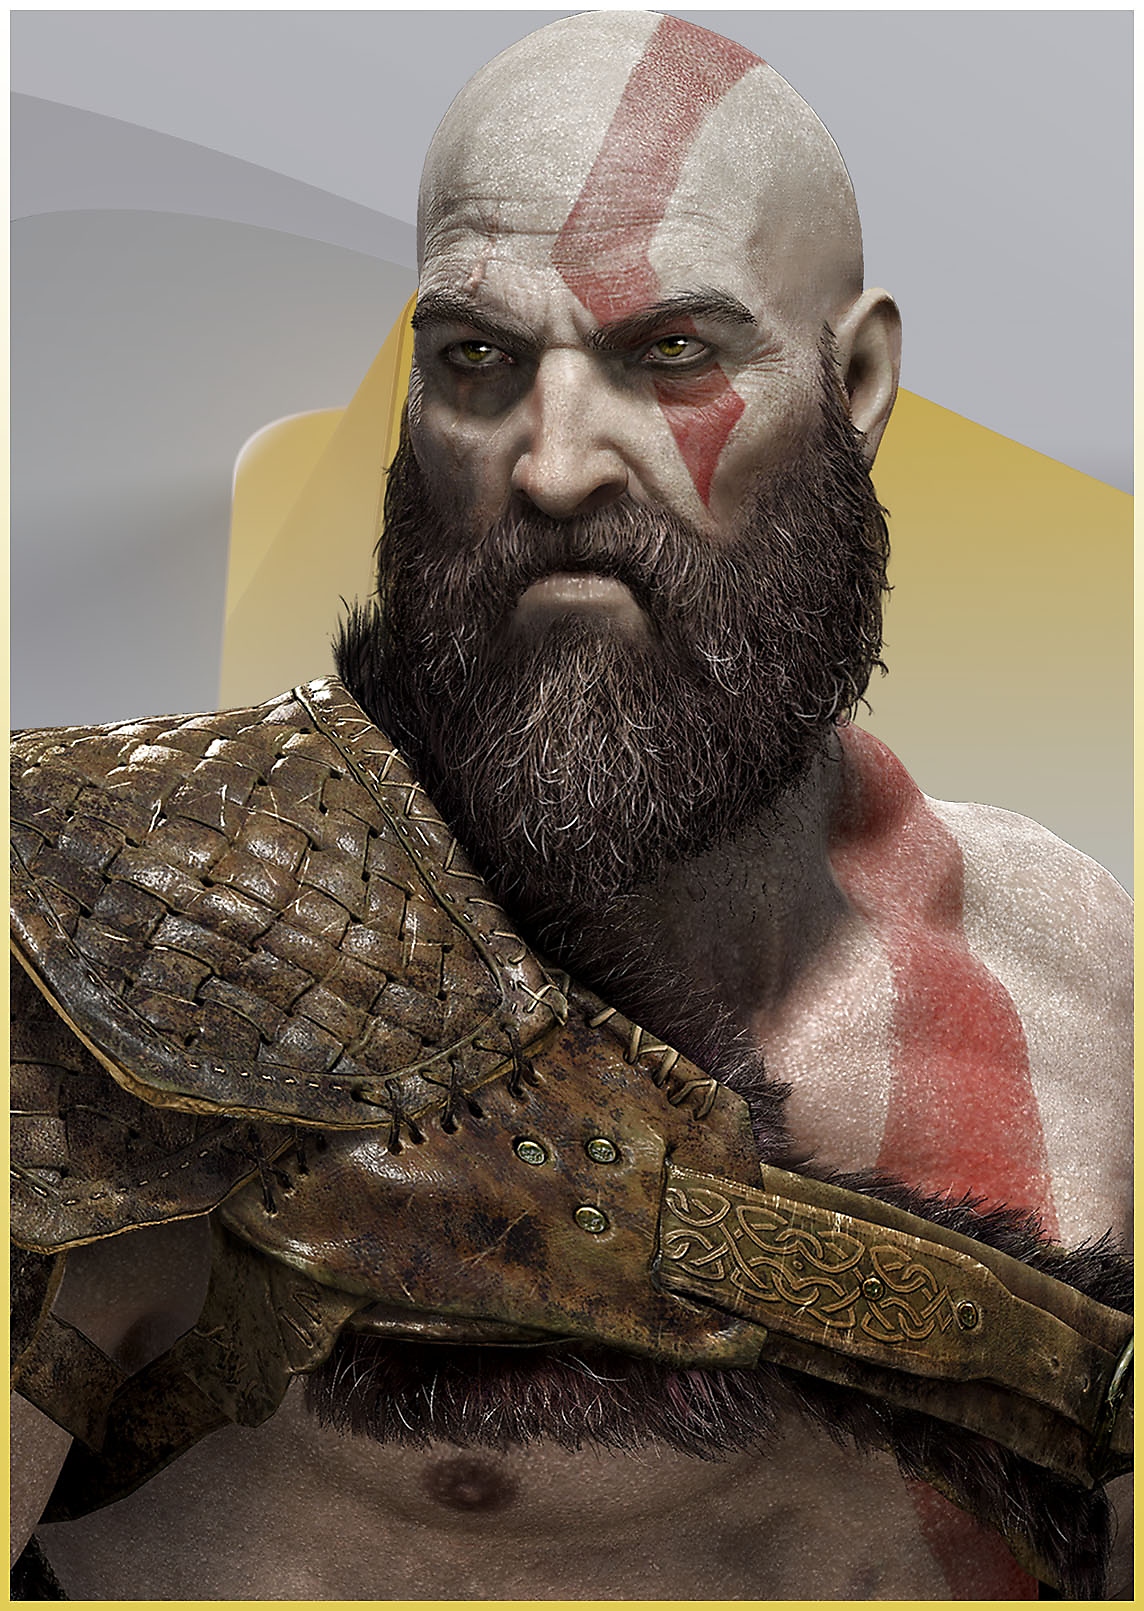 Kratos z God of War, wygląda na wściekłego